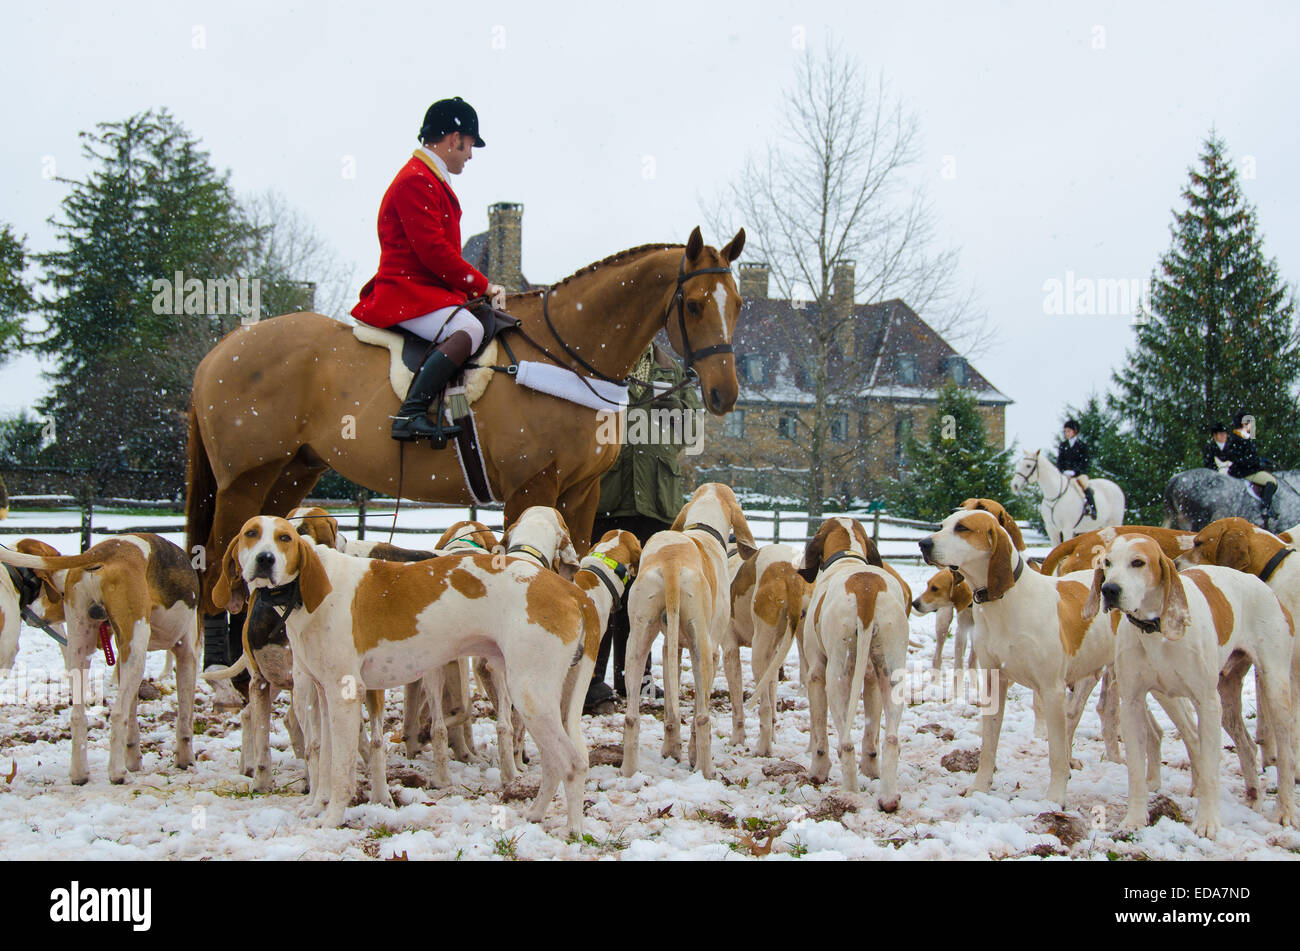 Come la bugle suoni, Essex Hunt Club invia i cavalli e segugi racing nella prateria una procedura annuale di ringraziamento Fox Hunt. Foto Stock